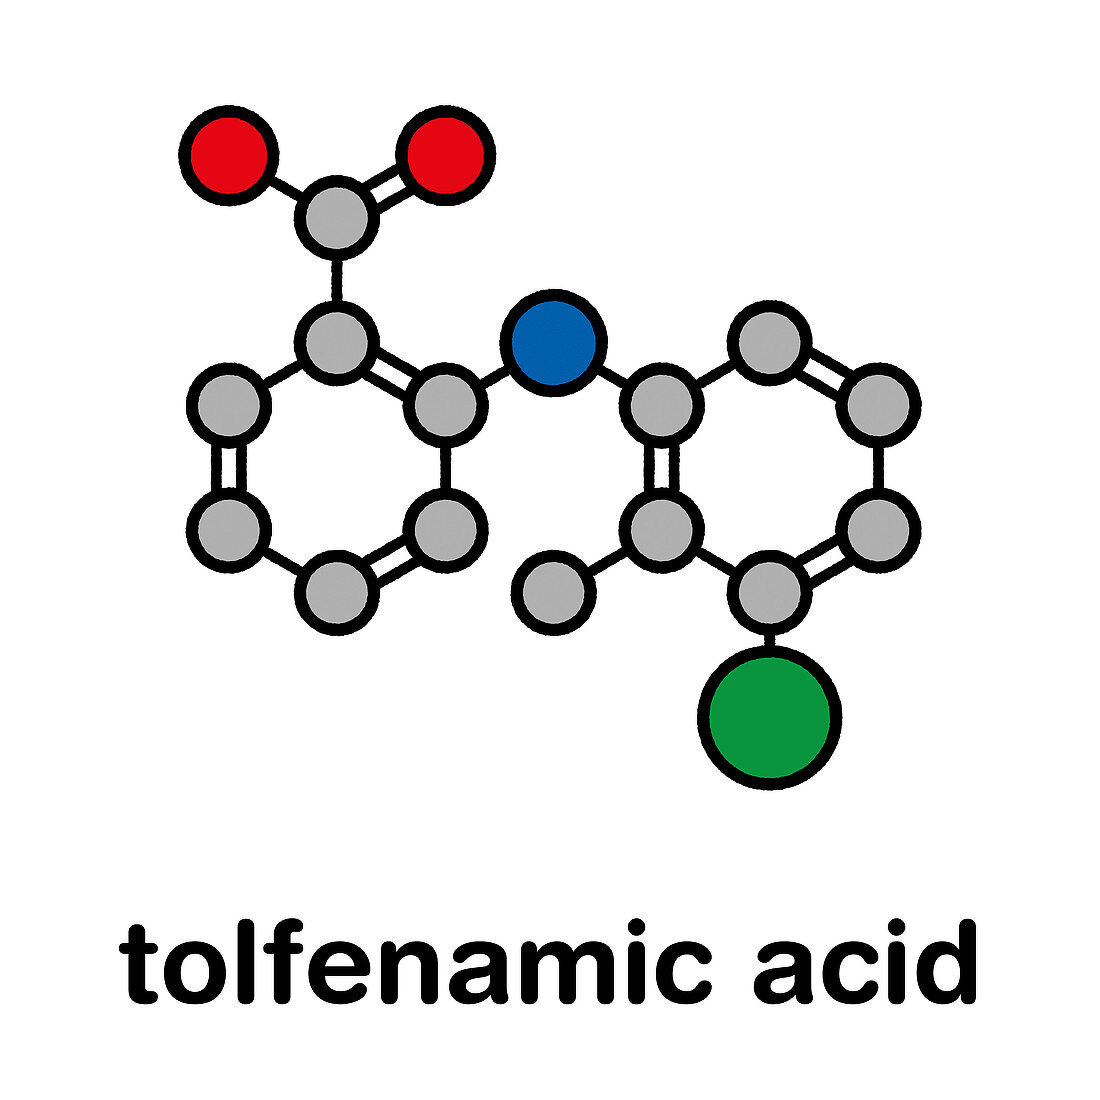 Tolfenamic acid NSAID drug